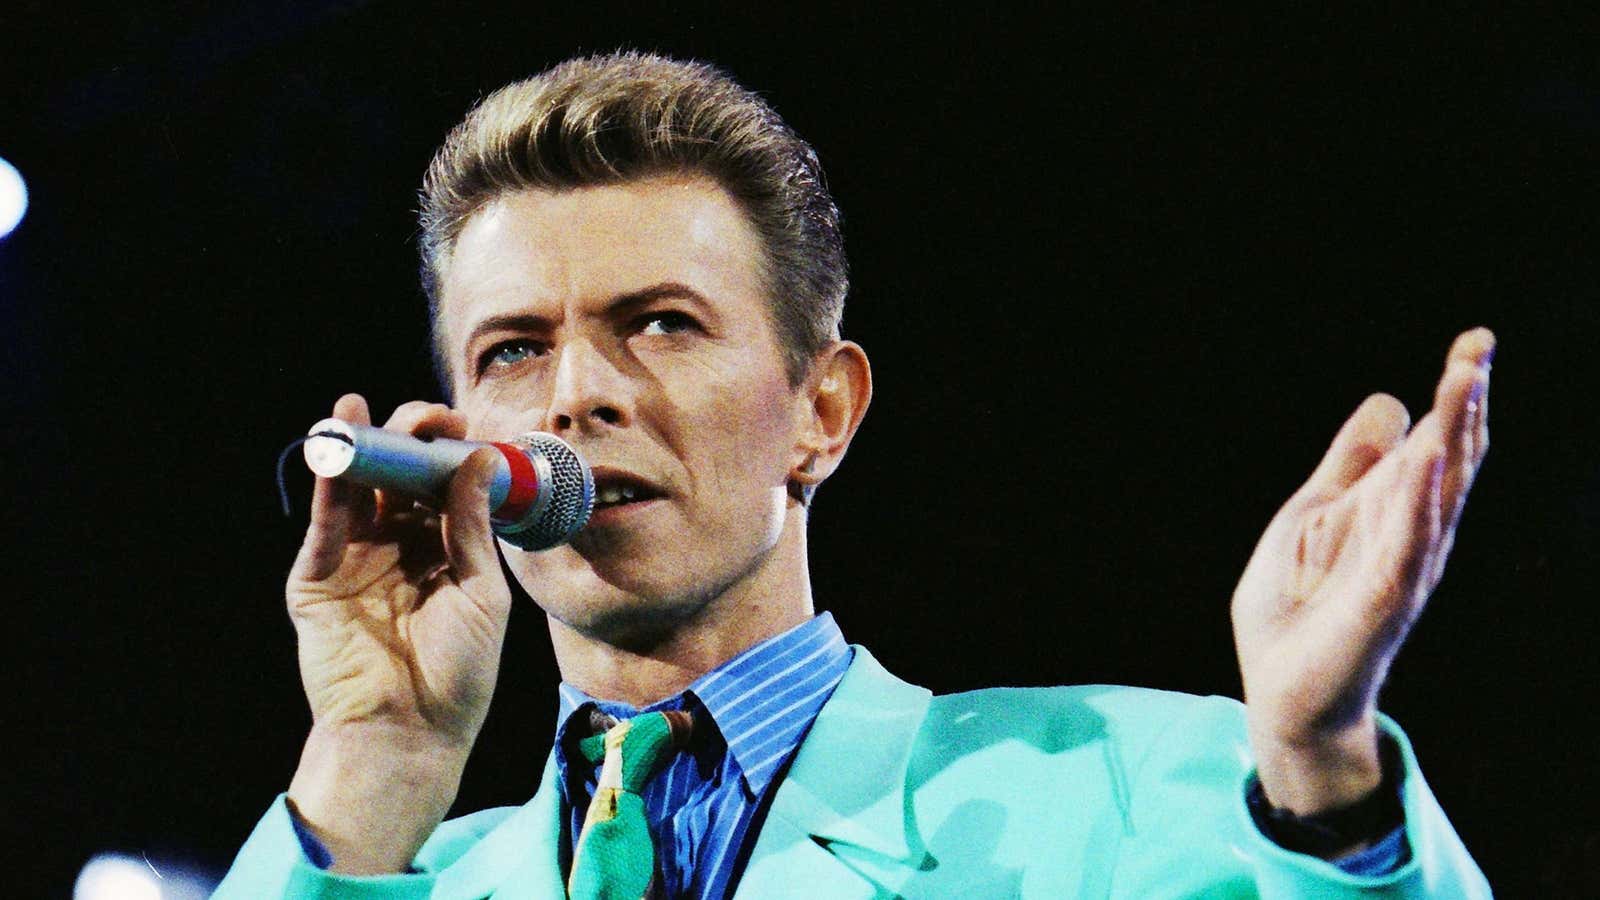 David Bowie, circa 1992.